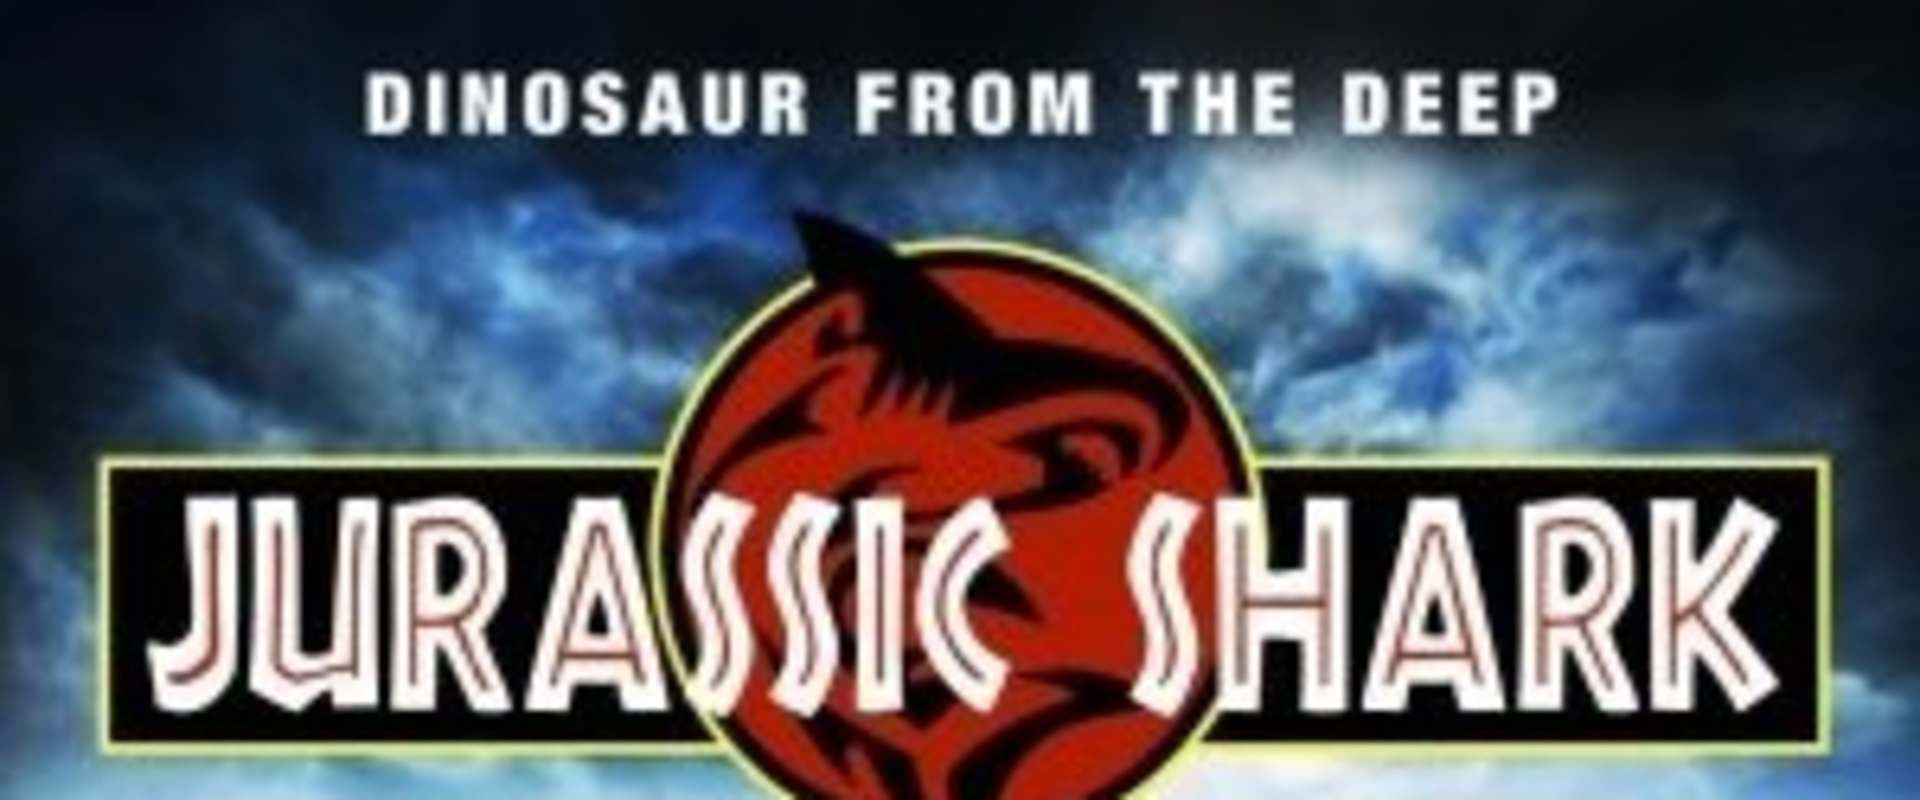 Jurassic Shark background 1